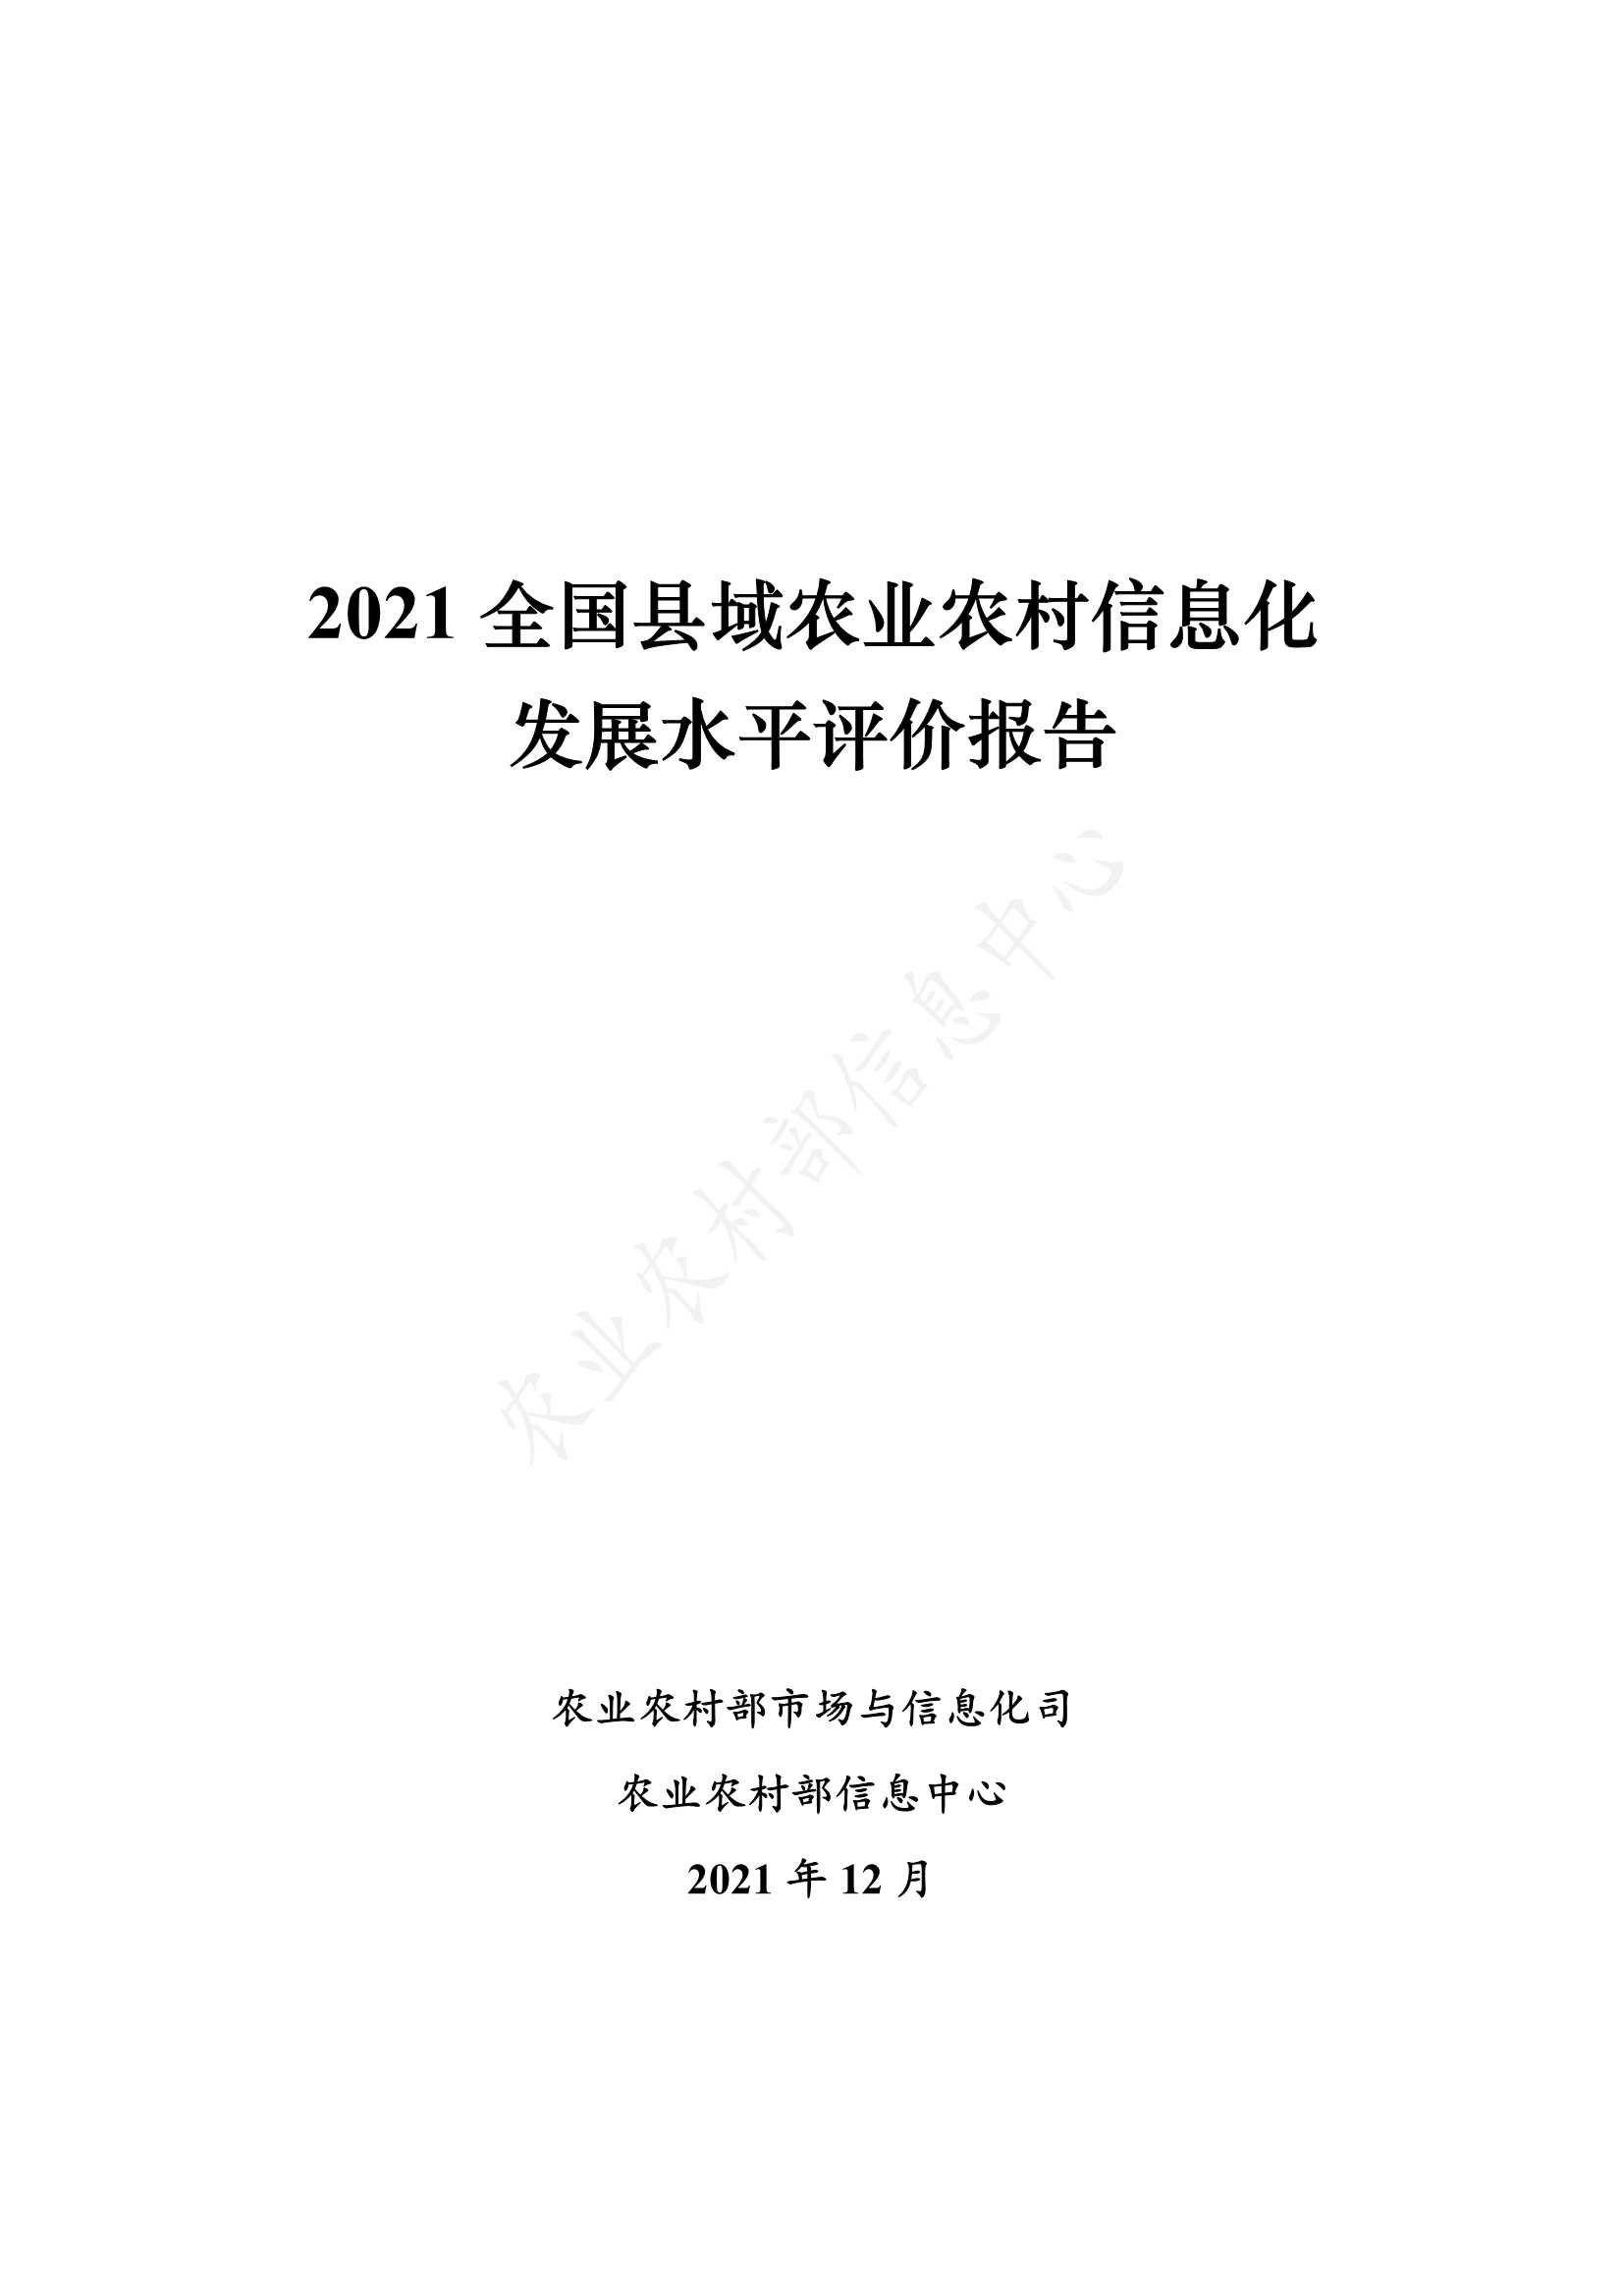 2021全国县域农业农村信息化发展水平评价报告-2022.01-33页